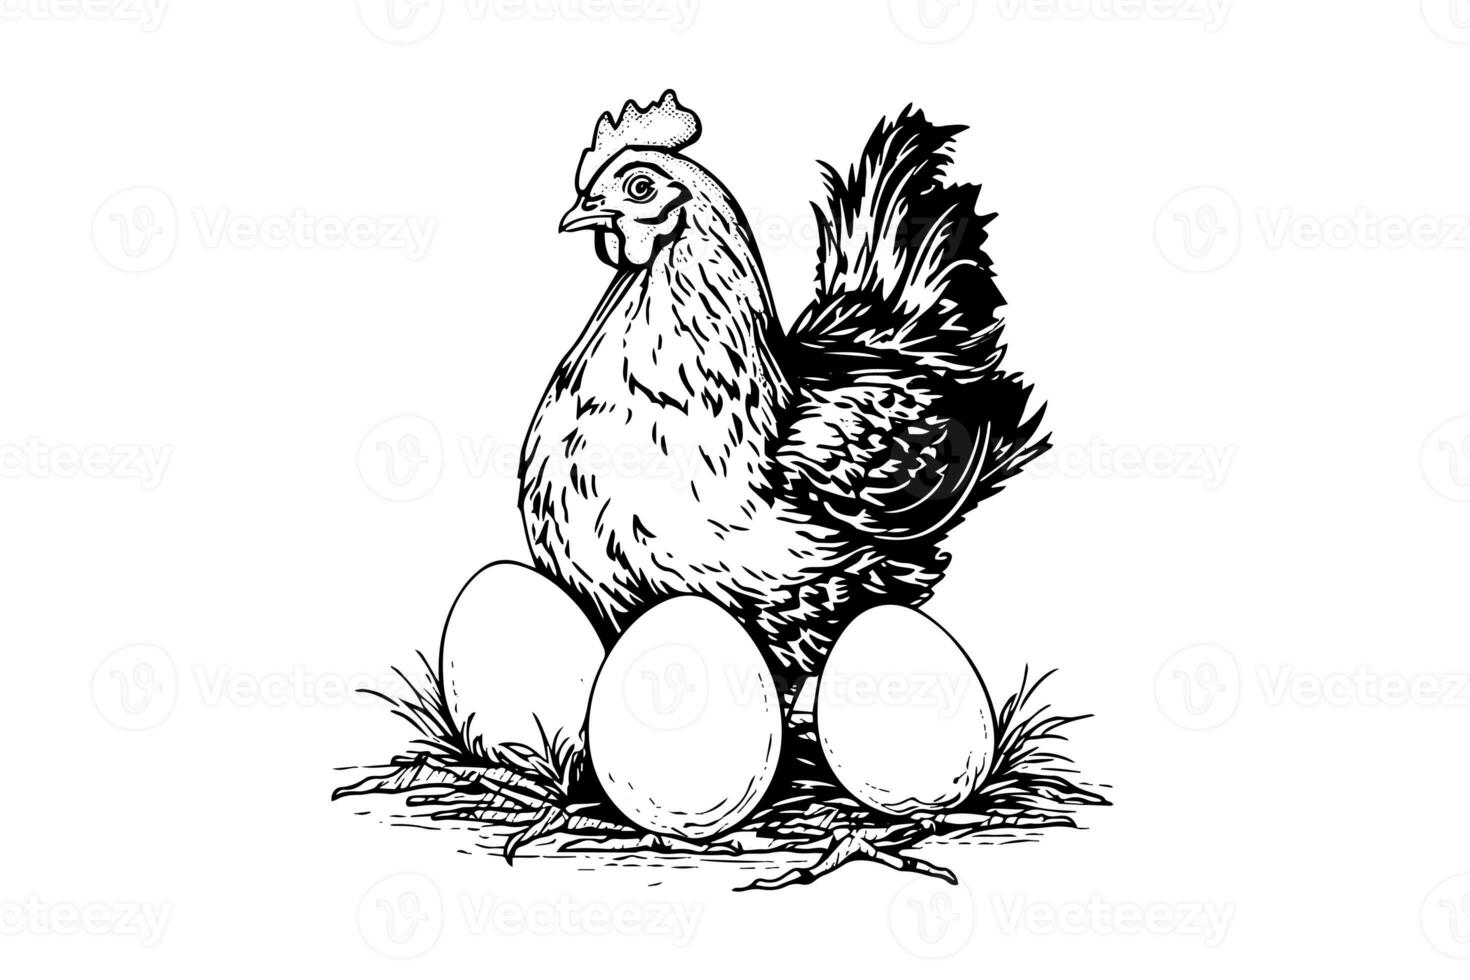 kunstbord sjabloonkip of kip is uitkomen eieren getrokken in wijnoogst gravure stijl vector illustratie foto